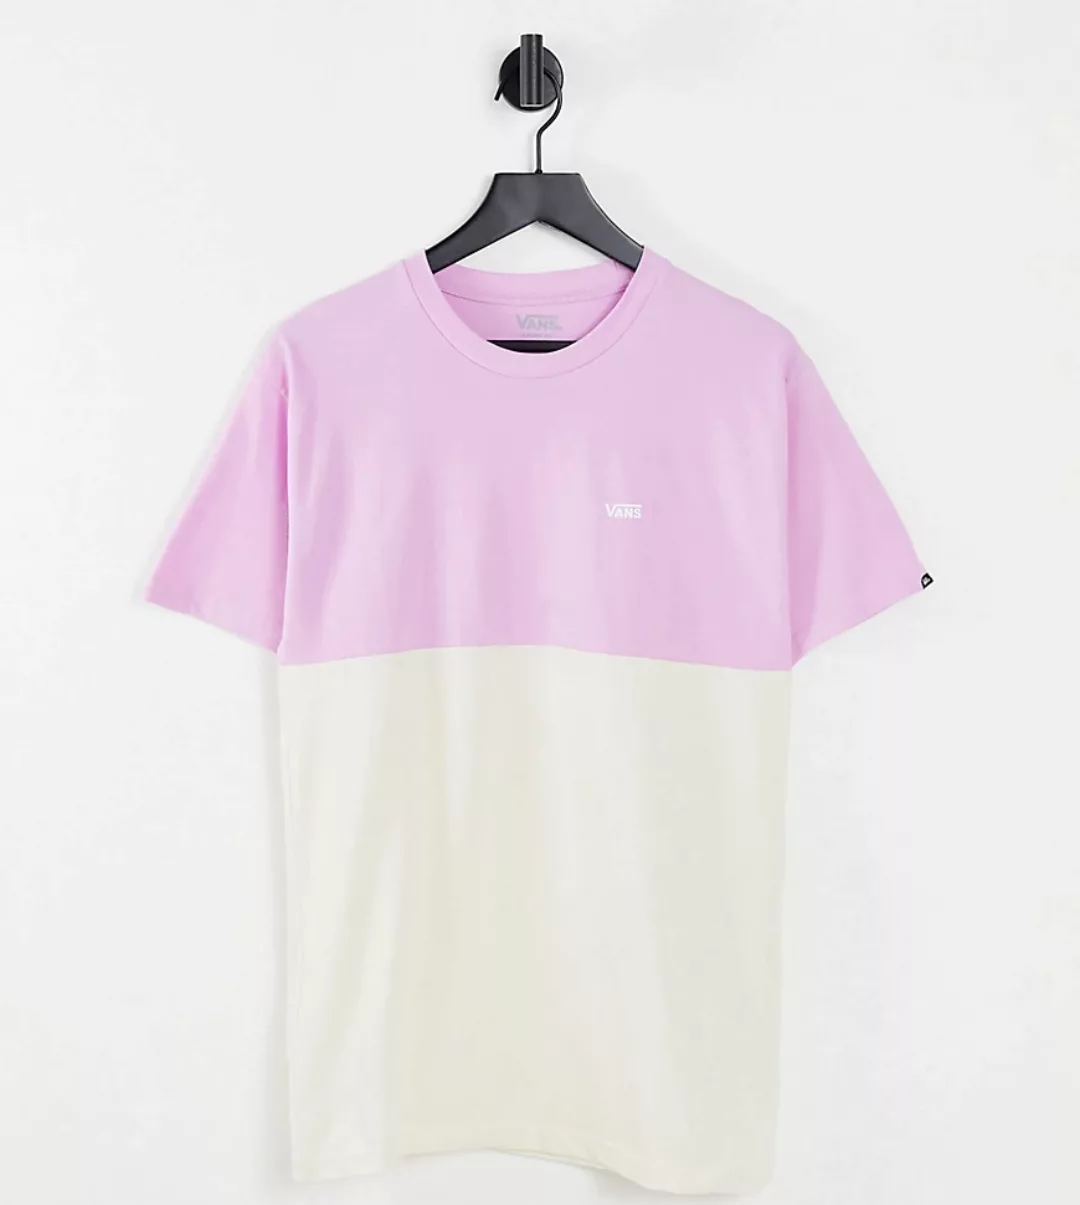 Vans – T-Shirt mit Farbblock-Design in Rosa/Cremeweiß, exklusiv bei ASOS-Vi günstig online kaufen